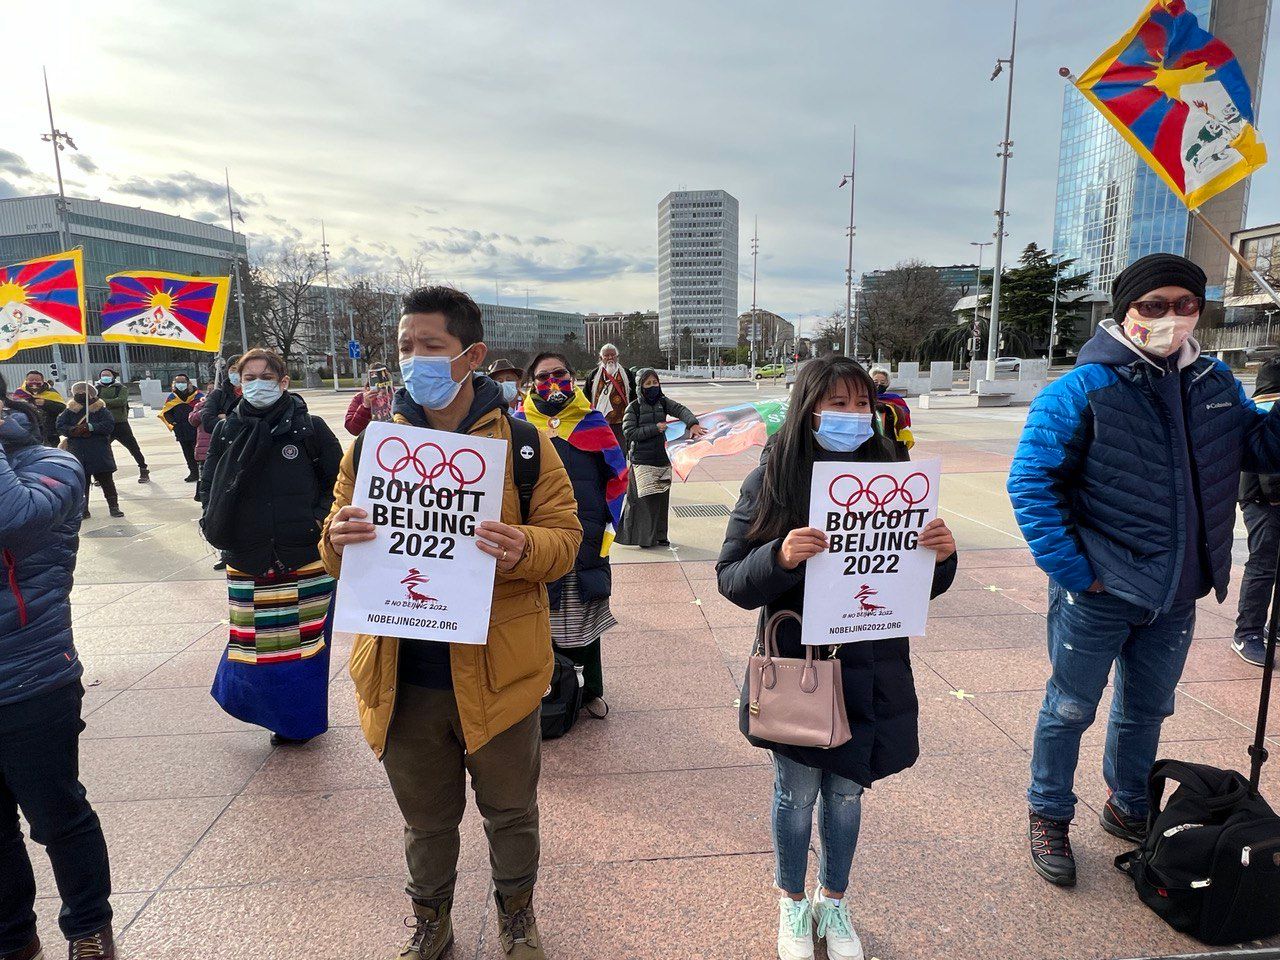 miembros de la comunidad tibetana de Suiza Liechtenstein se reunieron frente al Consejo de Derechos Humanos de la ONU para protestar contra los juegos olímpicos de invierno en Beijing. 2 comunidades tibetanas en Suiza y Alemania llaman al boicot diplomático de los Juegos Olímpicos de Beijing 2022